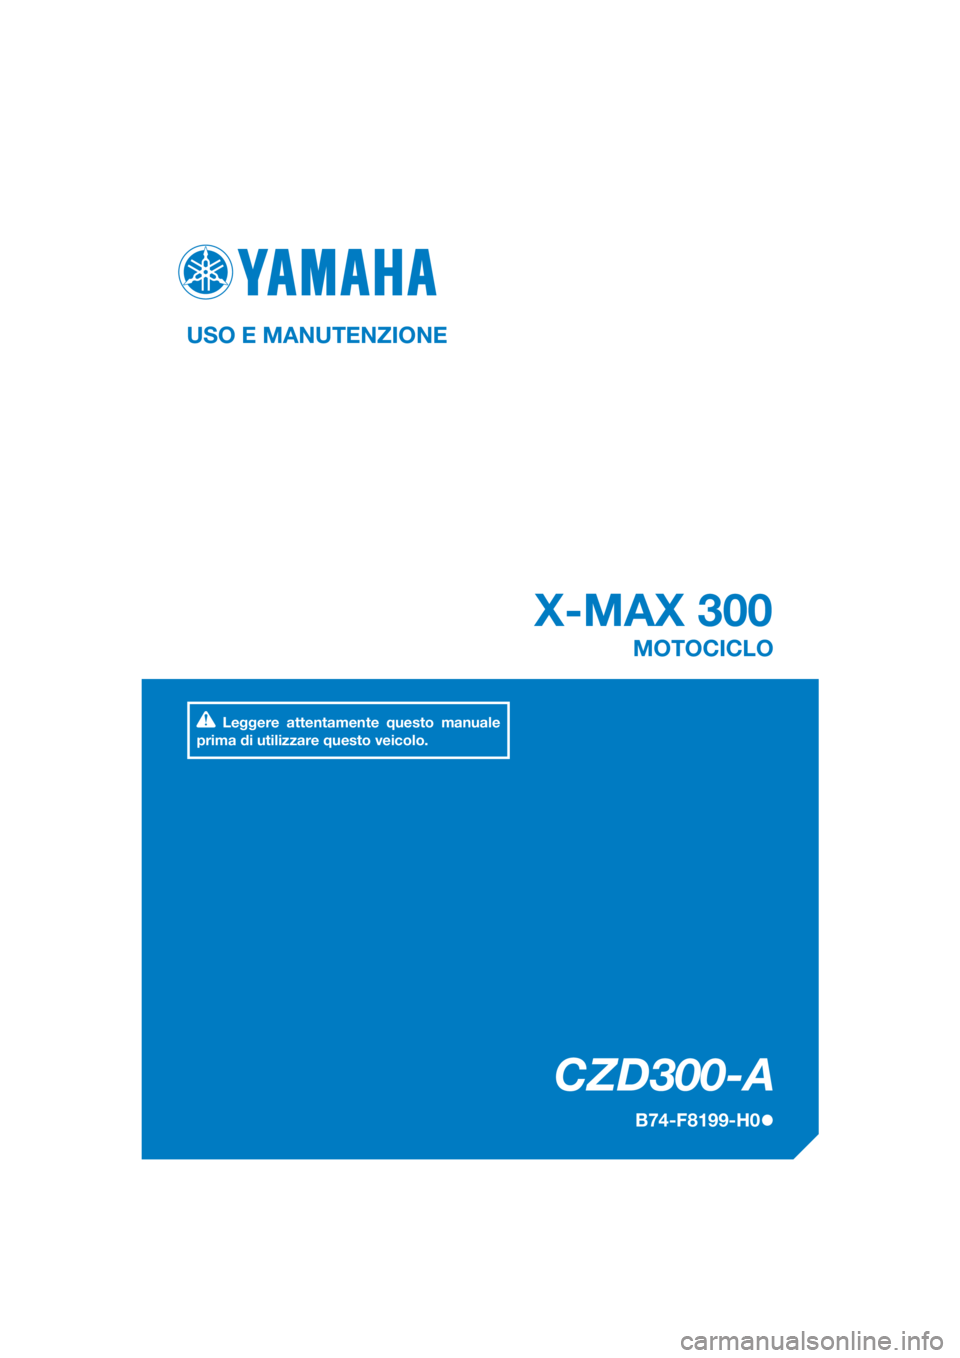 YAMAHA XMAX 300 2017  Manuale duso (in Italian) DIC183
CZD300-A
X-MAX 300
USO E MANUTENZIONE
B74-F8199-H0
MOTOCICLO
Leggere attentamente questo manuale 
prima di utilizzare questo veicolo.
[Italian  (H)] 